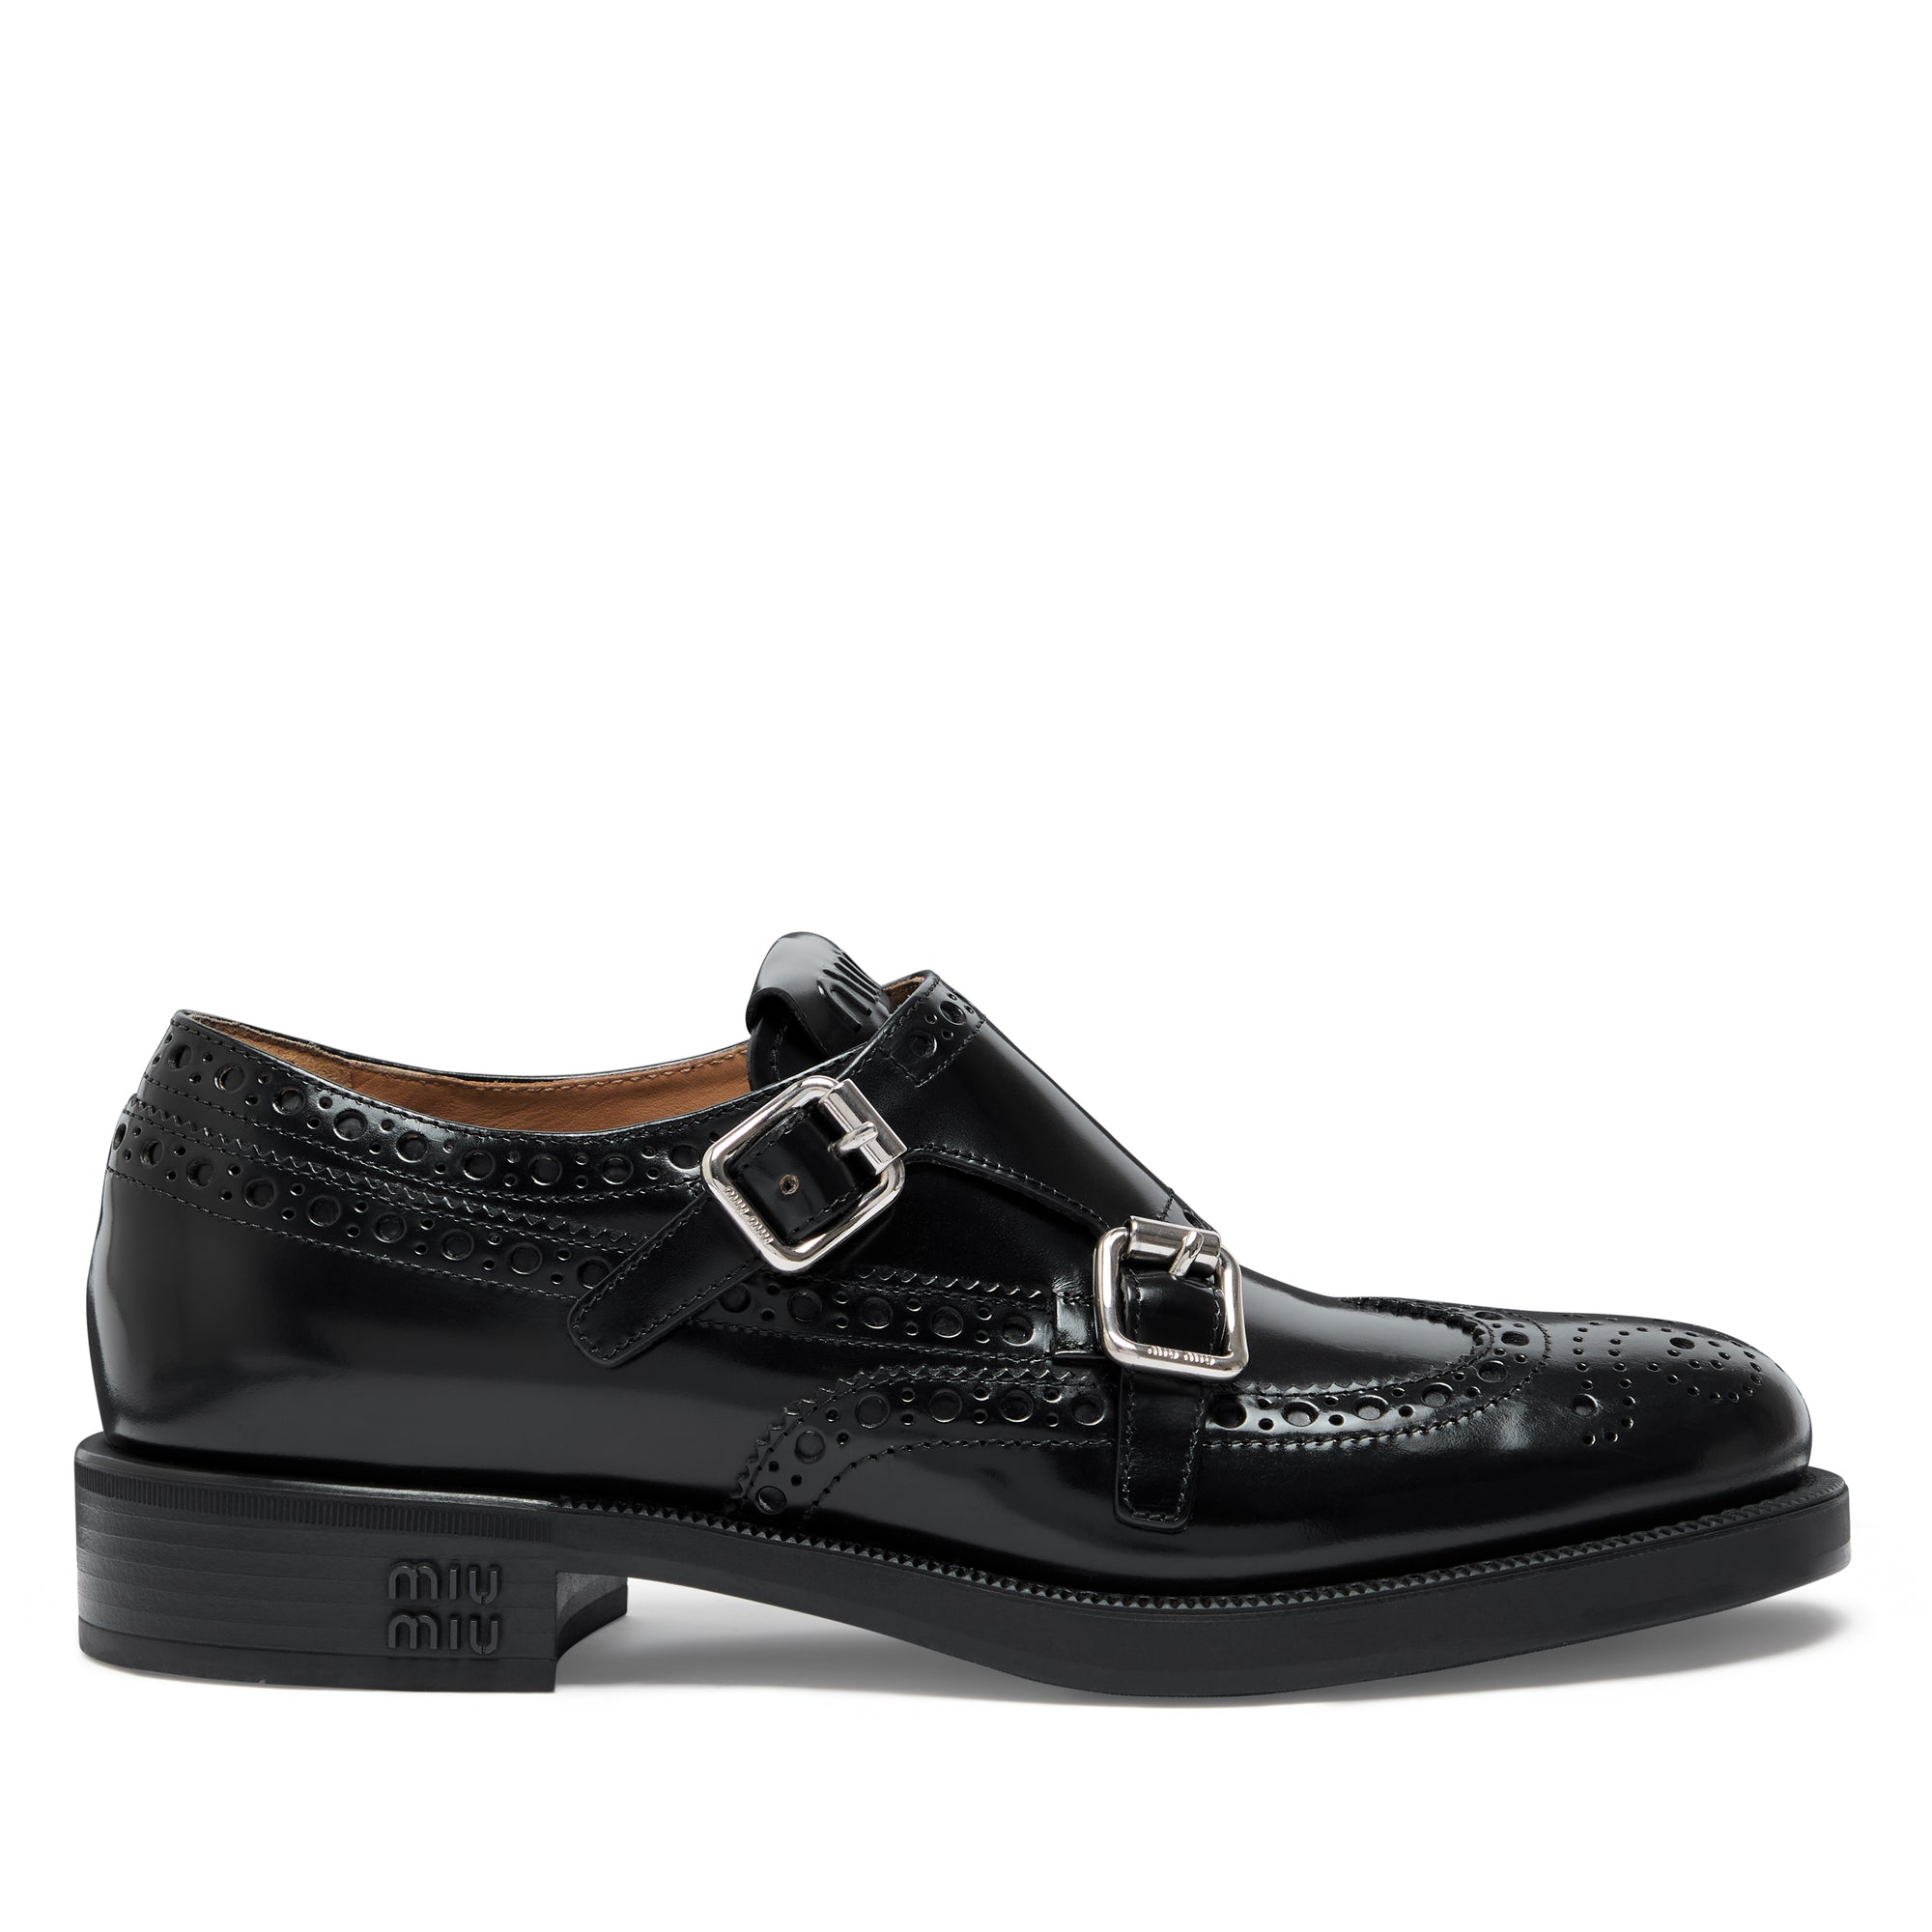 Miu Miu - Church’s Women’s Brushed Leather Double Monk Brogue Shoes - (Black) view 1